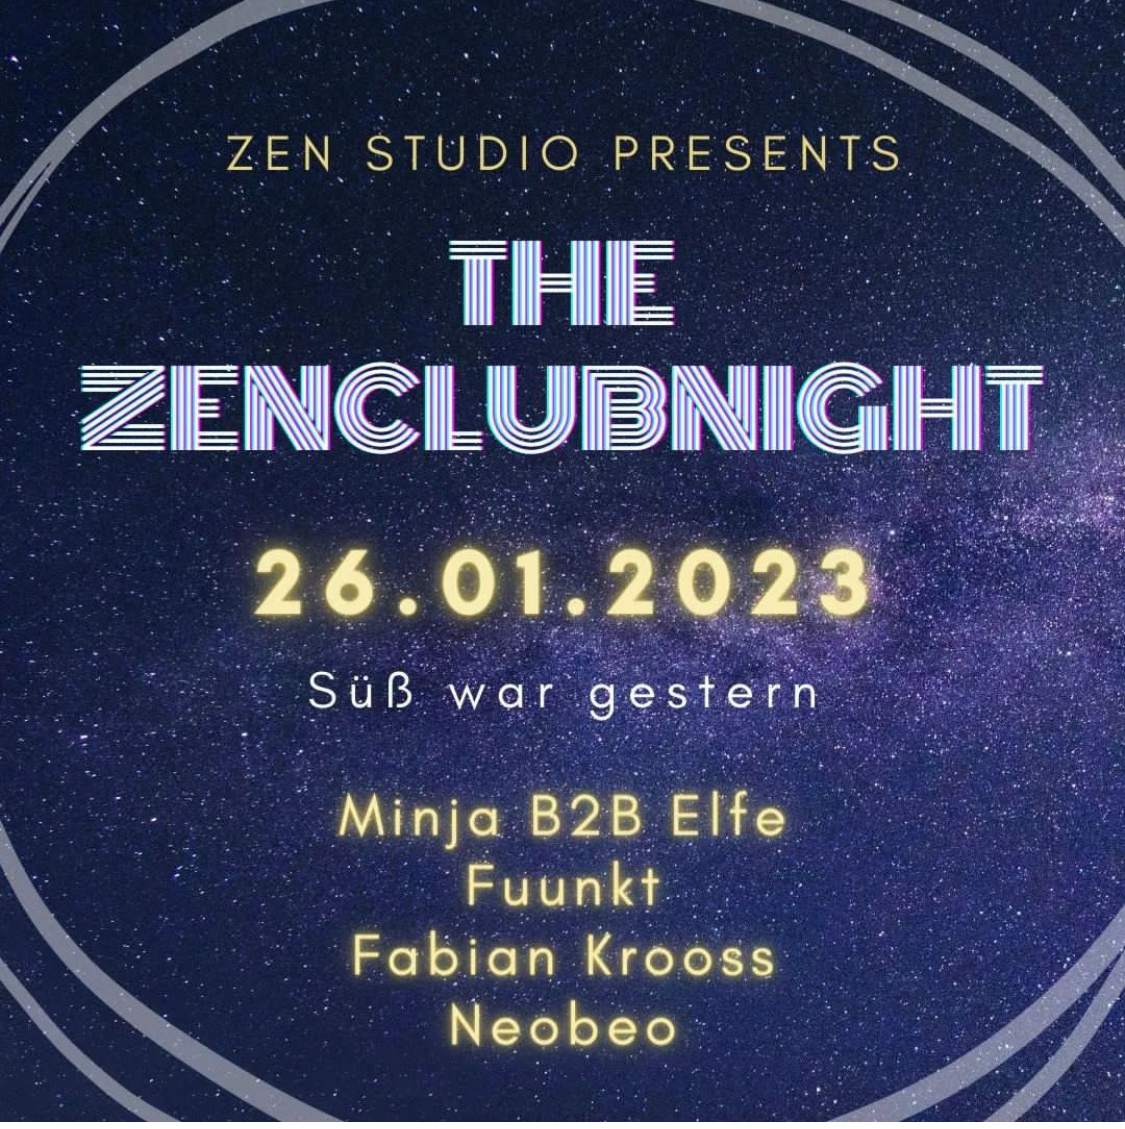 Zen Club Night - フライヤー表